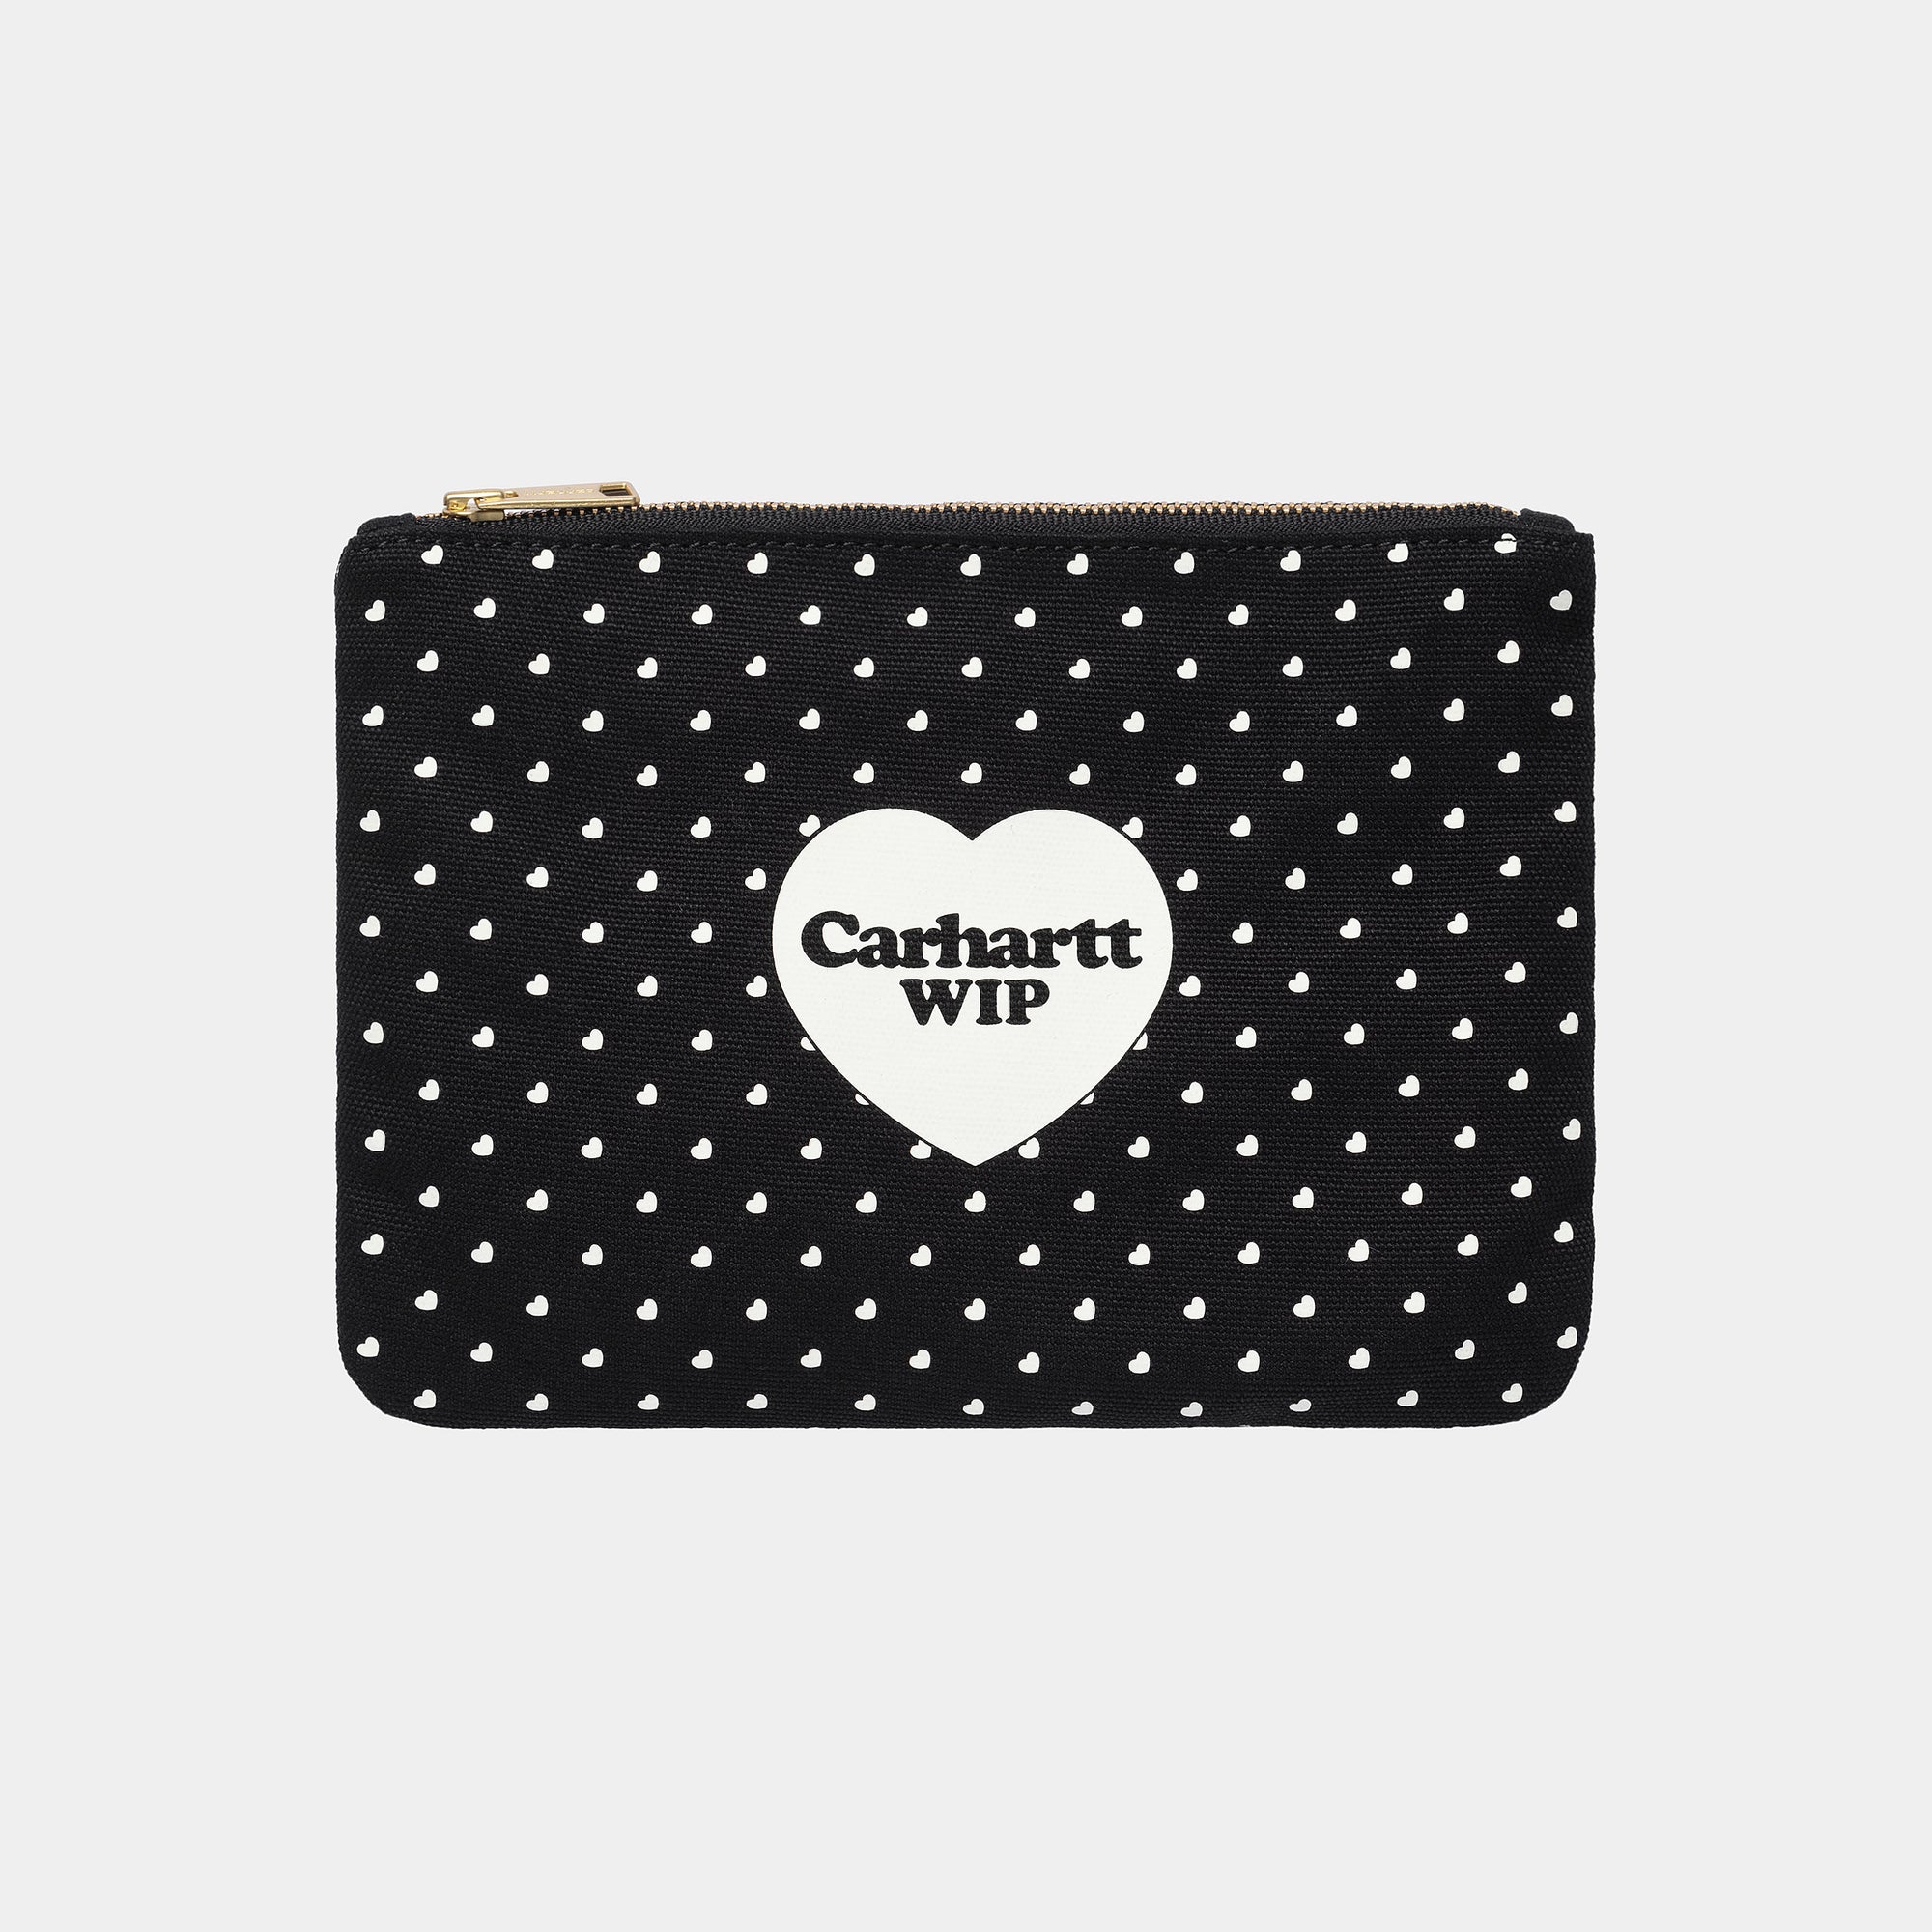 Carhartt WIP Canvas Graphic Zip Wallet - Black